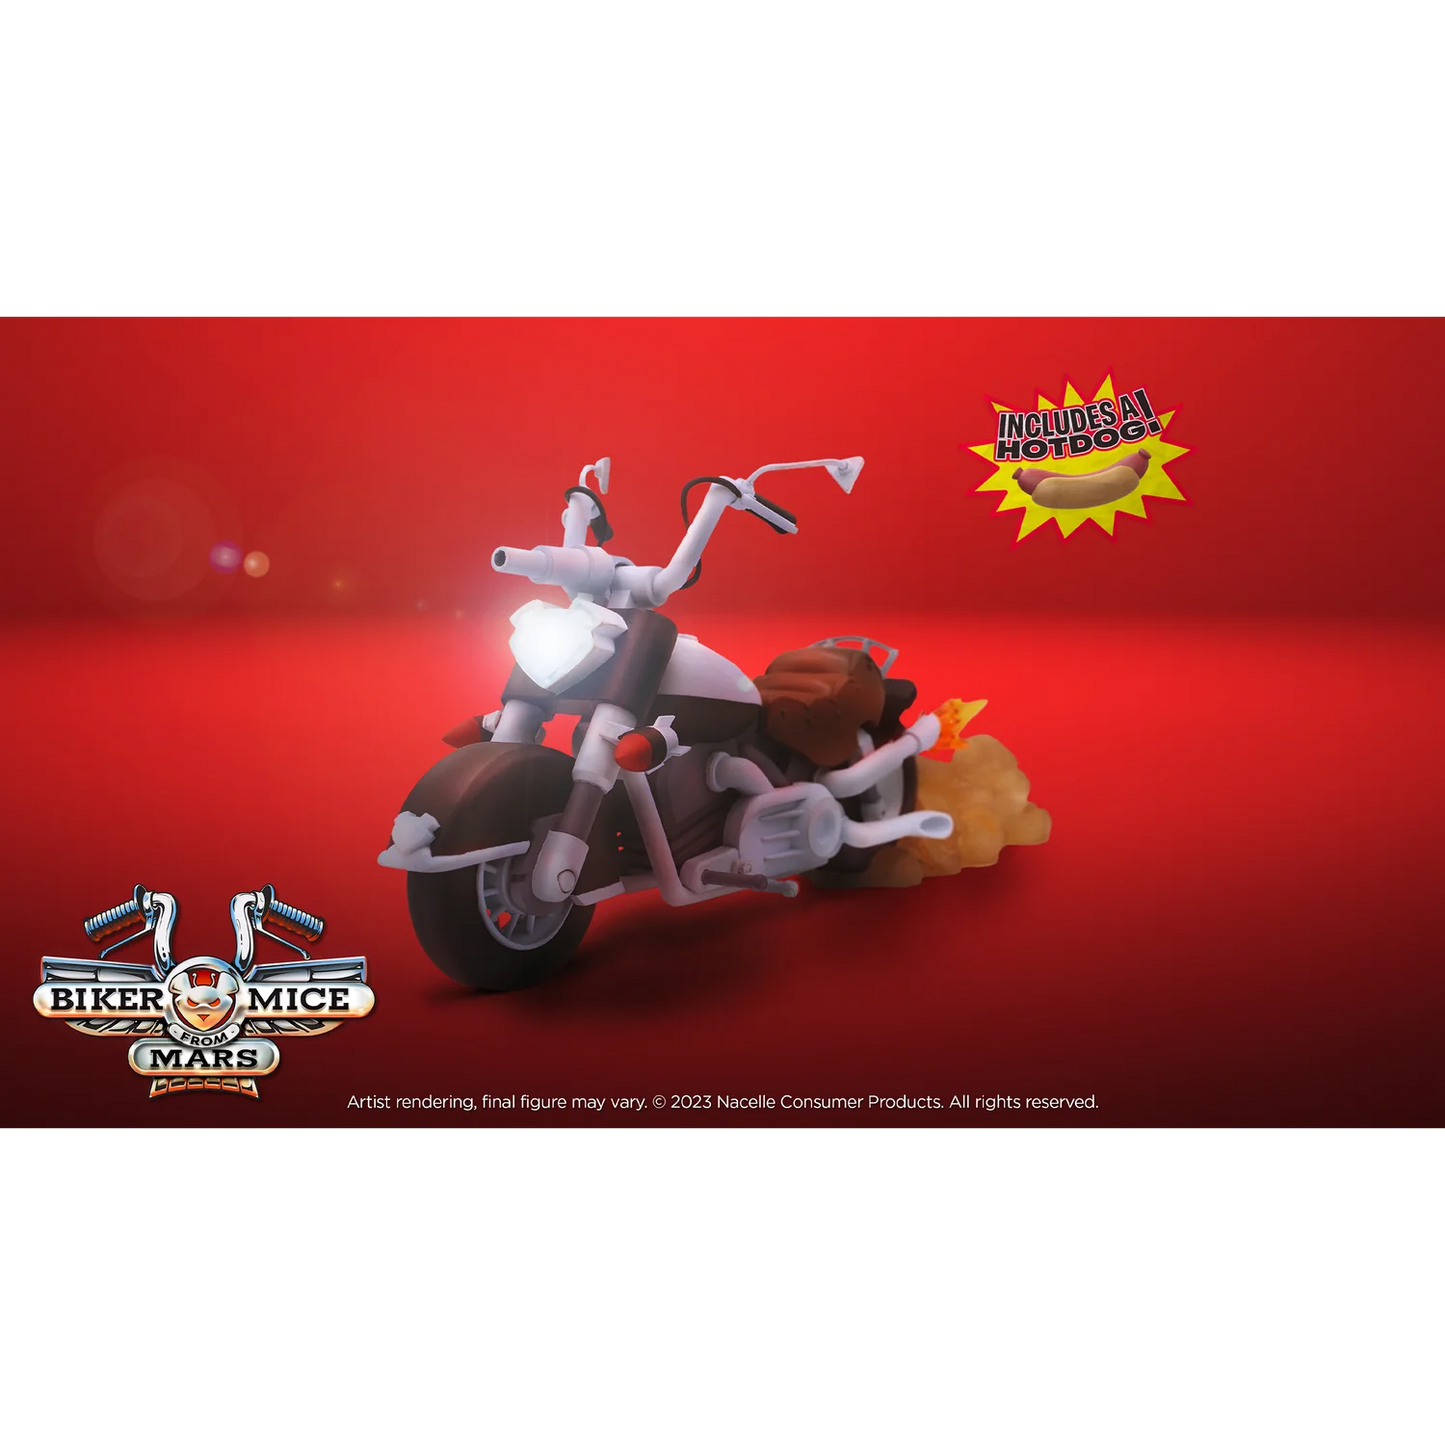 Biker Mice from Mars - Throttle's Martian Monster Bike